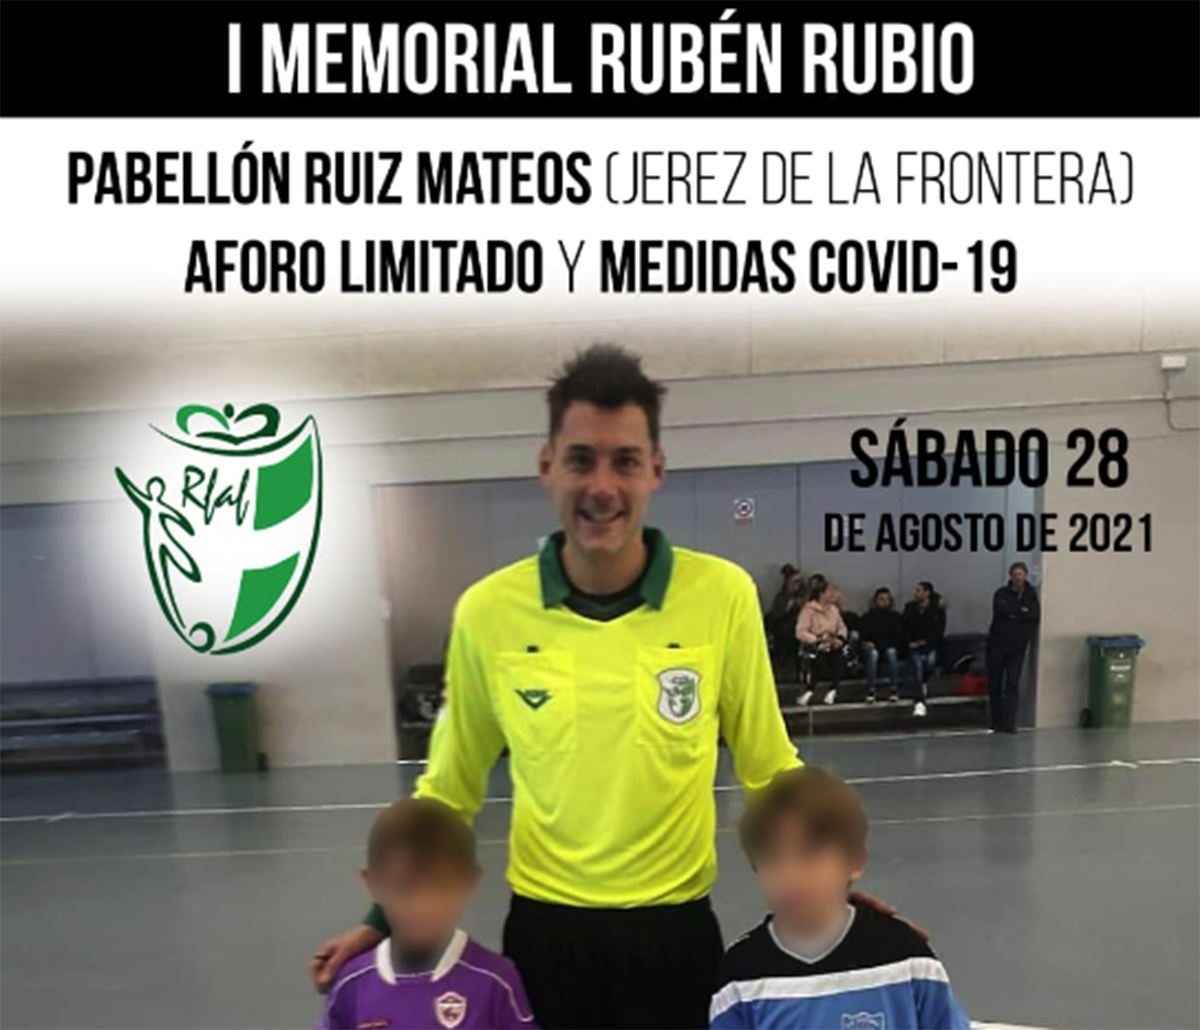 Imagen del cartel del I Memorial Rubén Rubio.